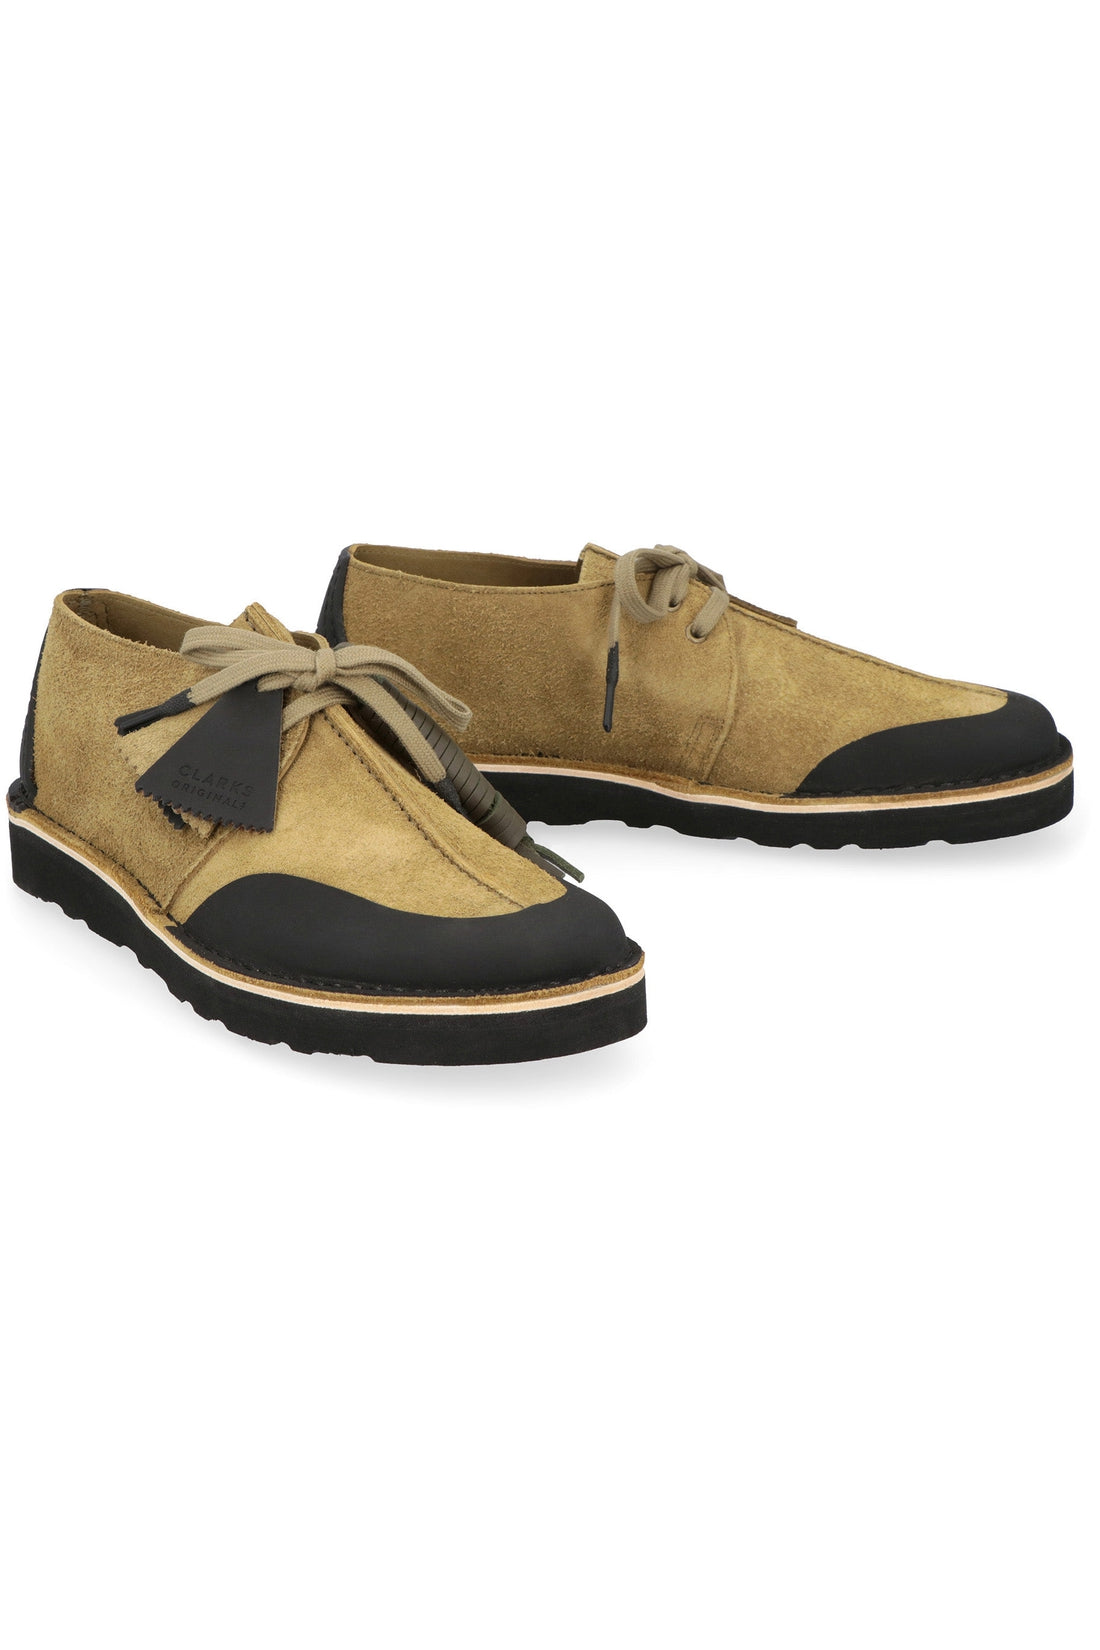 C.P. Company-OUTLET-SALE-Clarks x C.P Company - Desert Trek suede lace-up shoes-ARCHIVIST